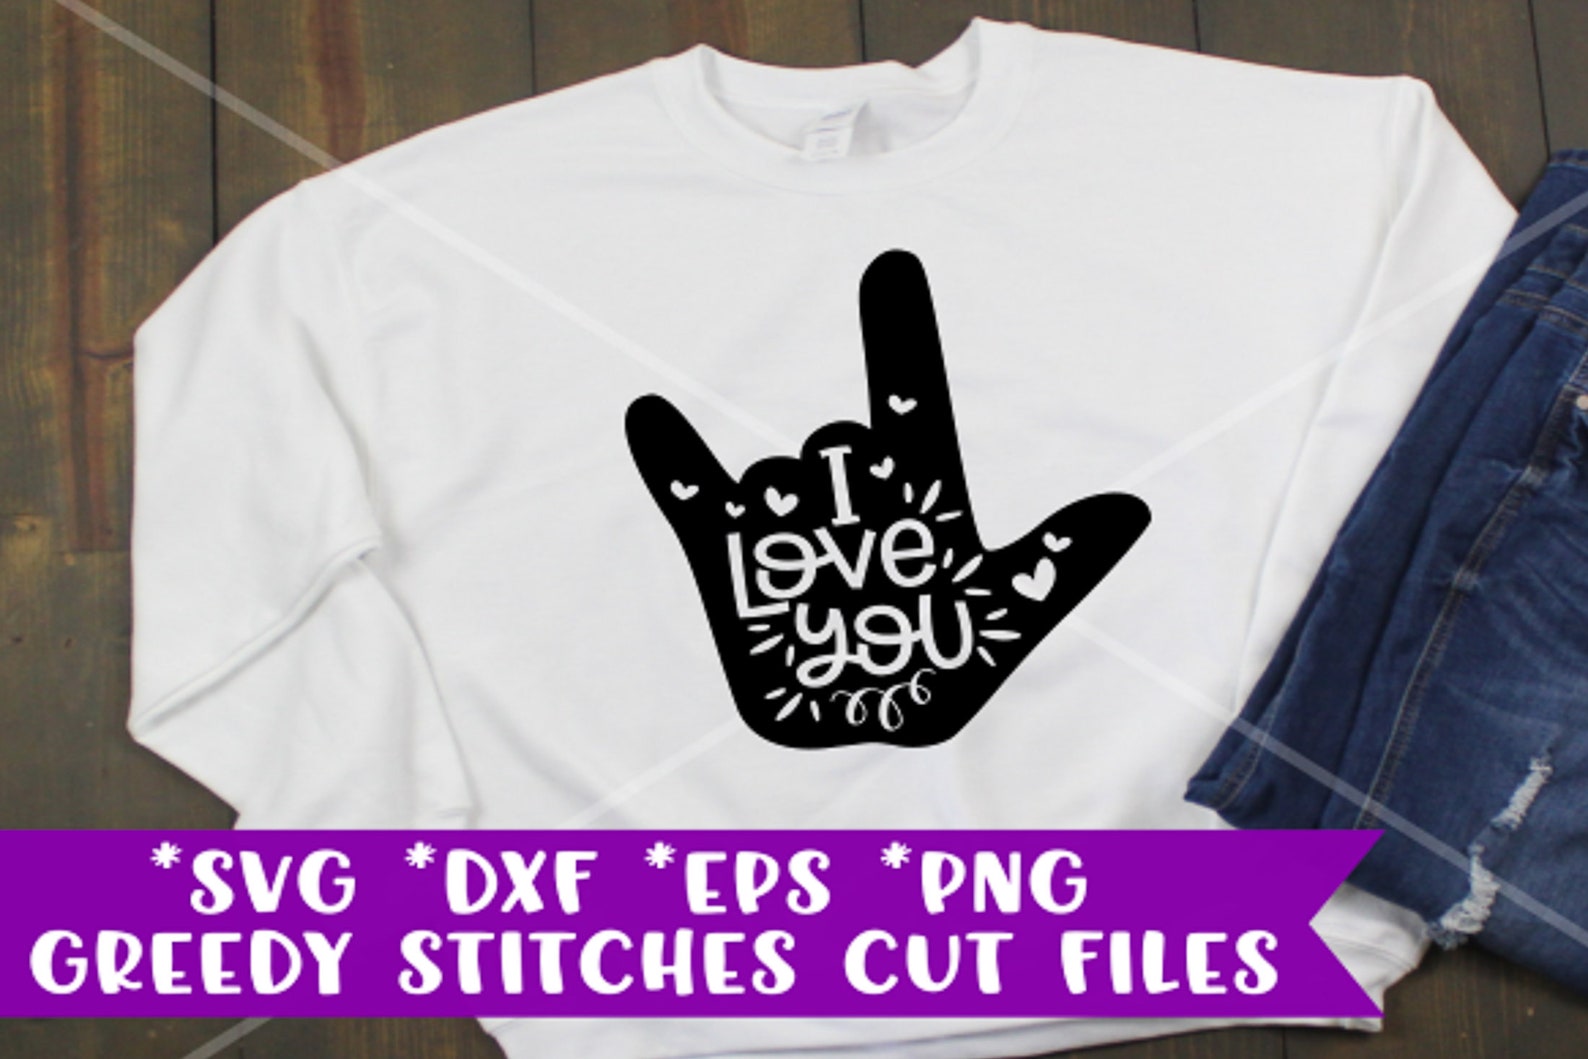 Download I Love You svg dxf eps png. Heart Love SvG ASL Svg | Etsy